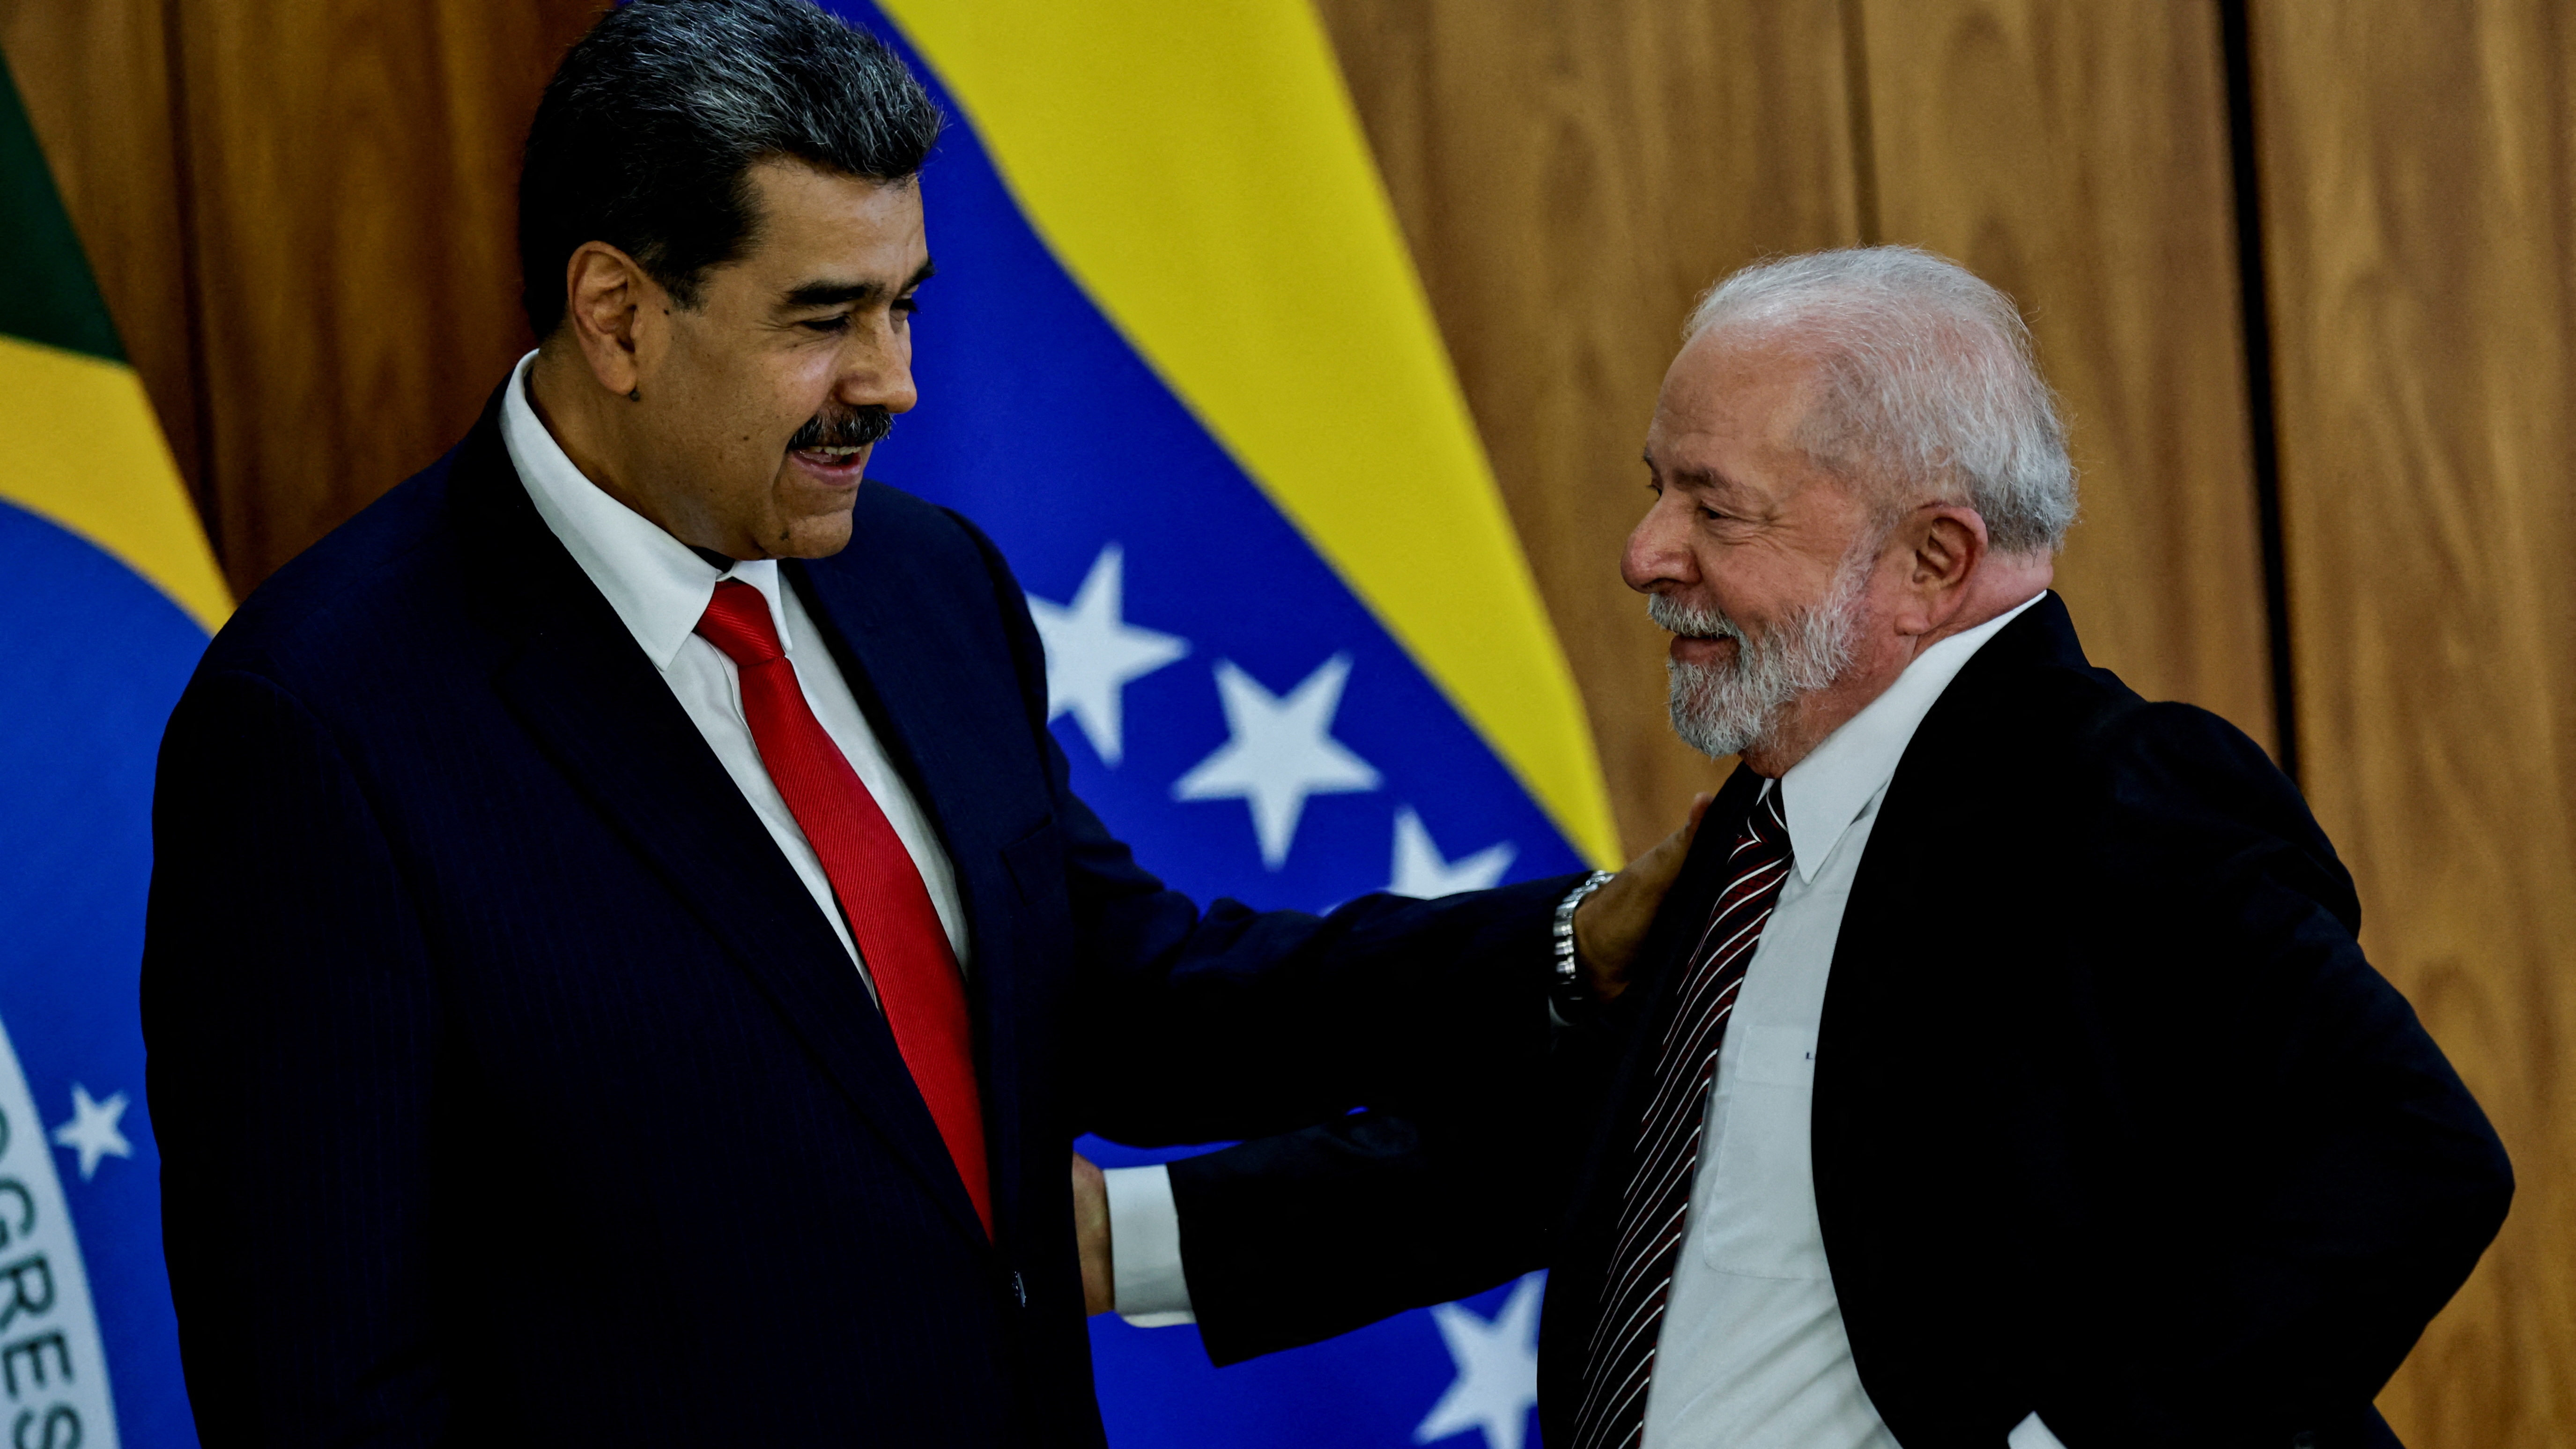 Brasil busca crear una alianza antiliberal y antinorteamericana con regímenes de izquierda latinoamericanos y otros rivales de EEUU